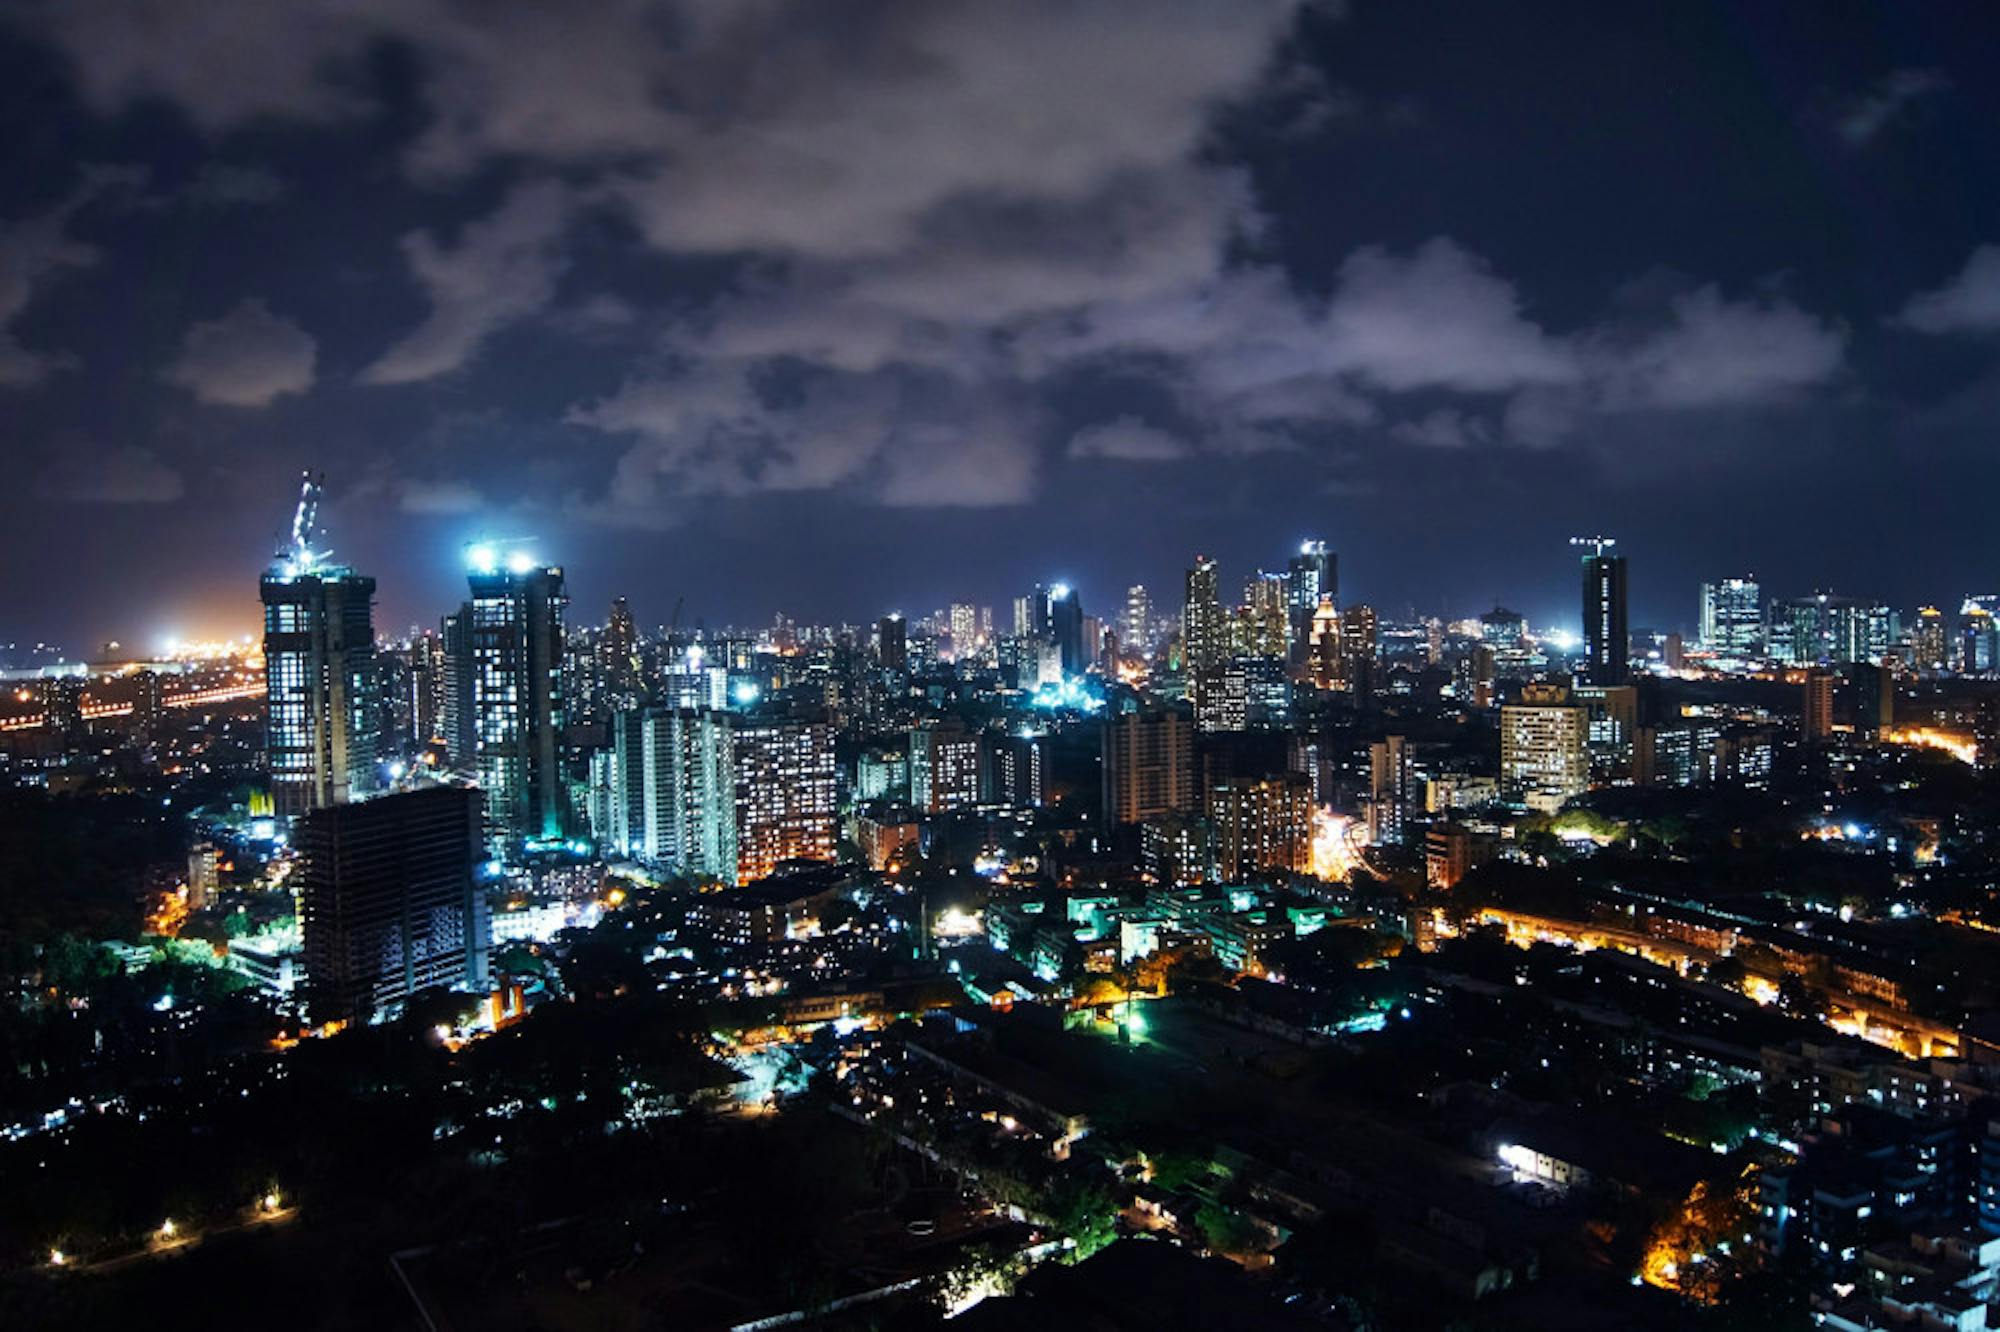 Mumbai_Night_City_18219784390